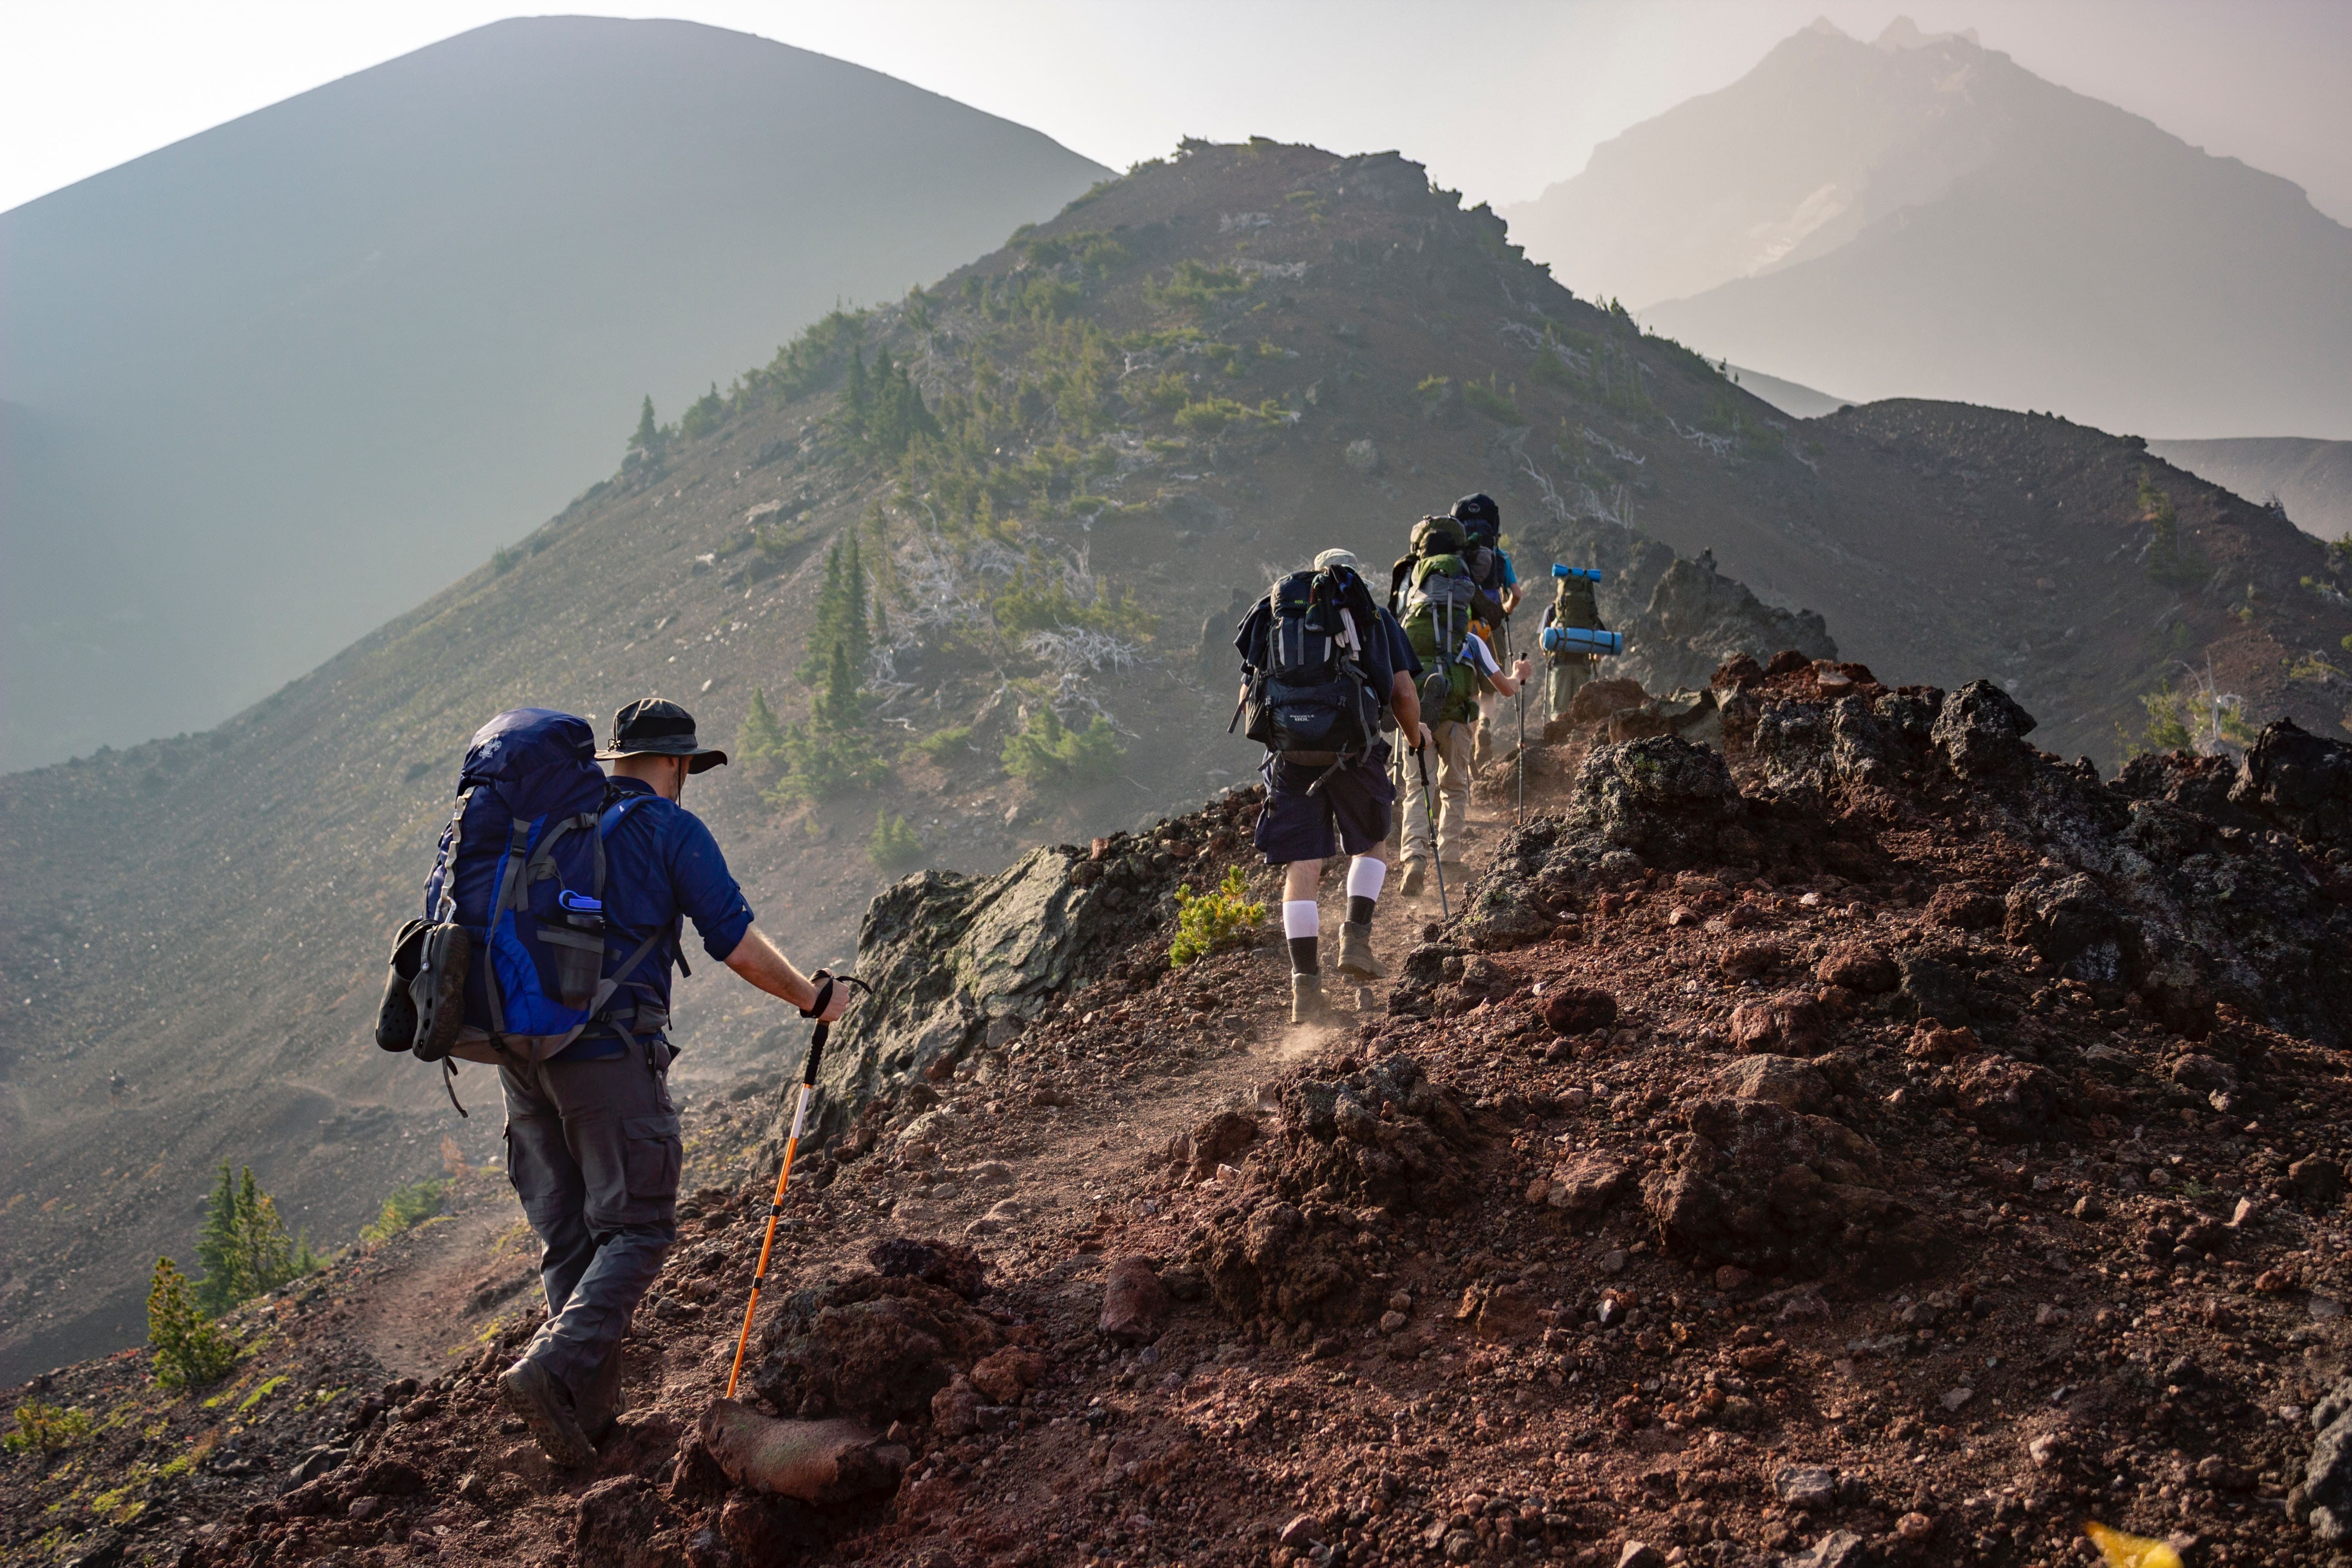 Hướng dẫn viên du lịch chia sẻ kinh nghiệm giúp bạn có chuyến trekking an toàn